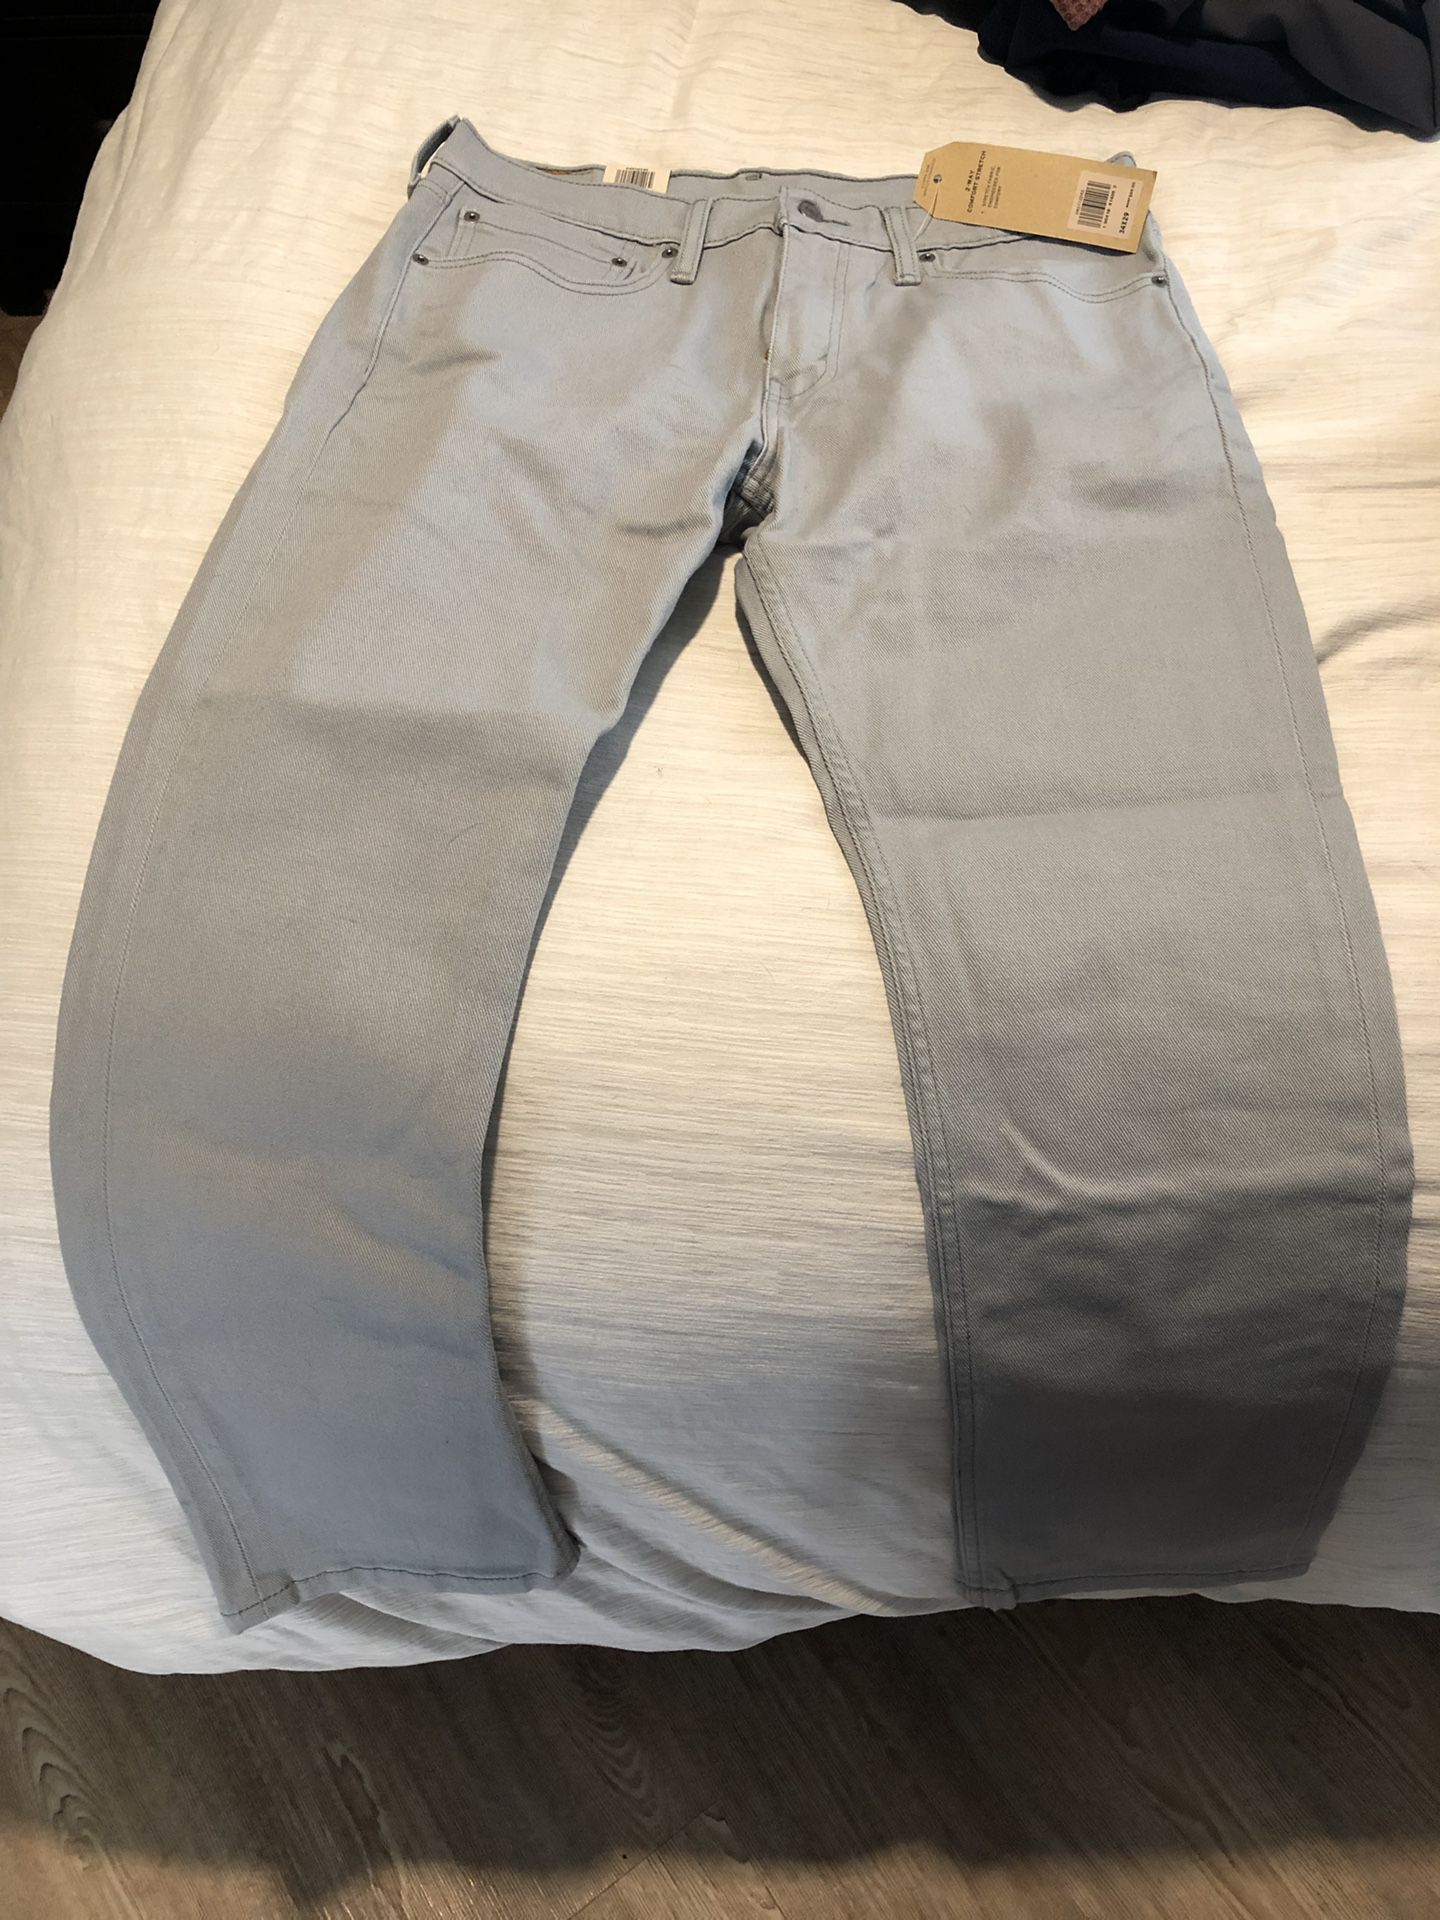 Levi’s 511 Slim Fit Jeans. Men’s size 34 x 29